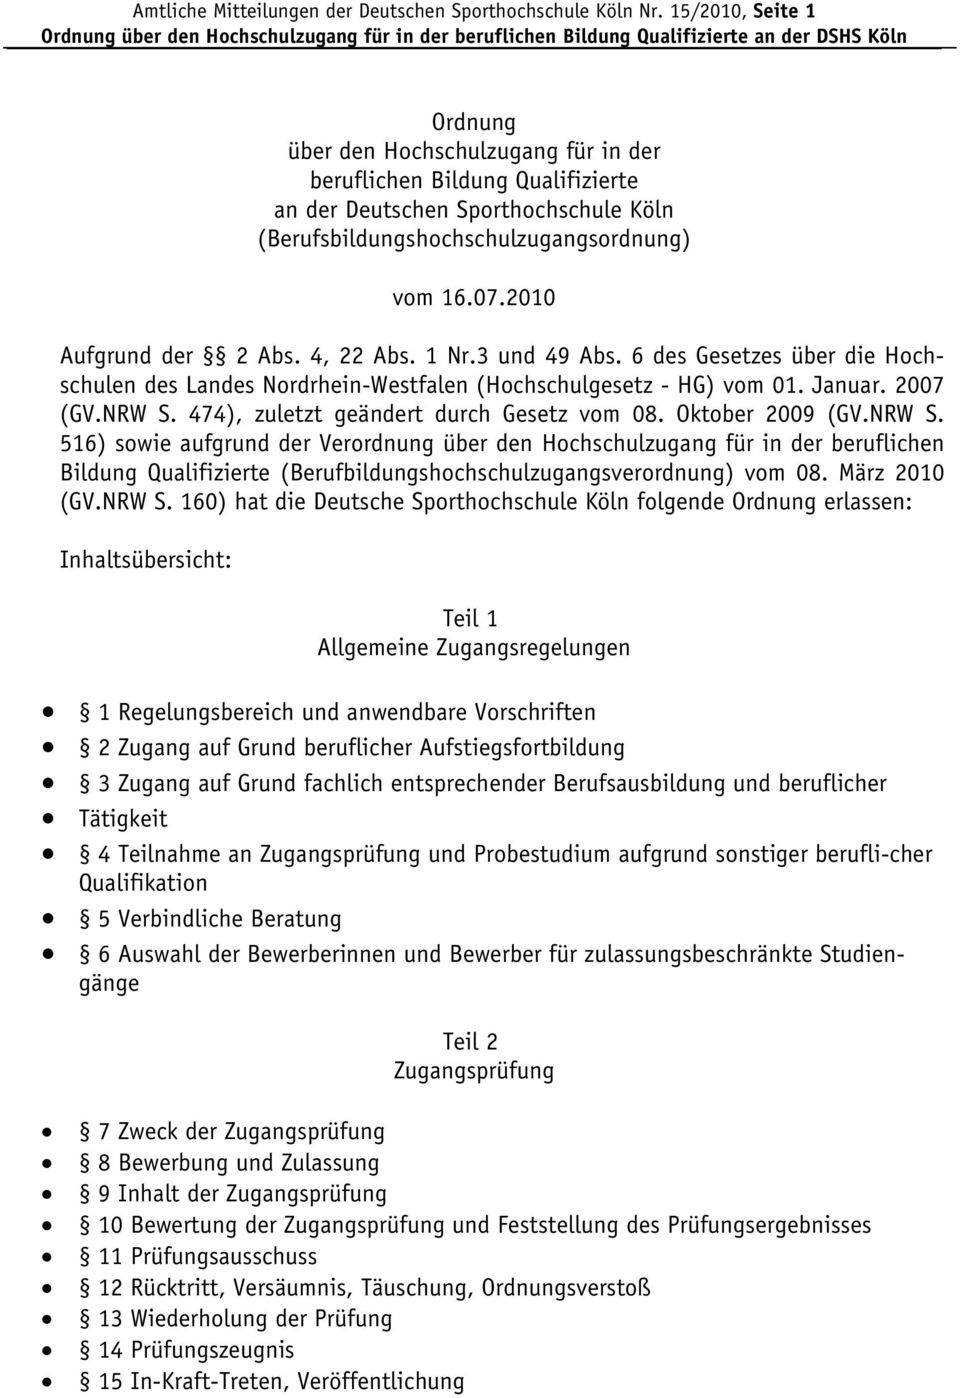 2010 Aufgrund der 2 Abs. 4, 22 Abs. 1 Nr.3 und 49 Abs. 6 des Gesetzes über die Hochschulen des Landes Nordrhein-Westfalen (Hochschulgesetz - HG) vom 01. Januar. 2007 (GV.NRW S.